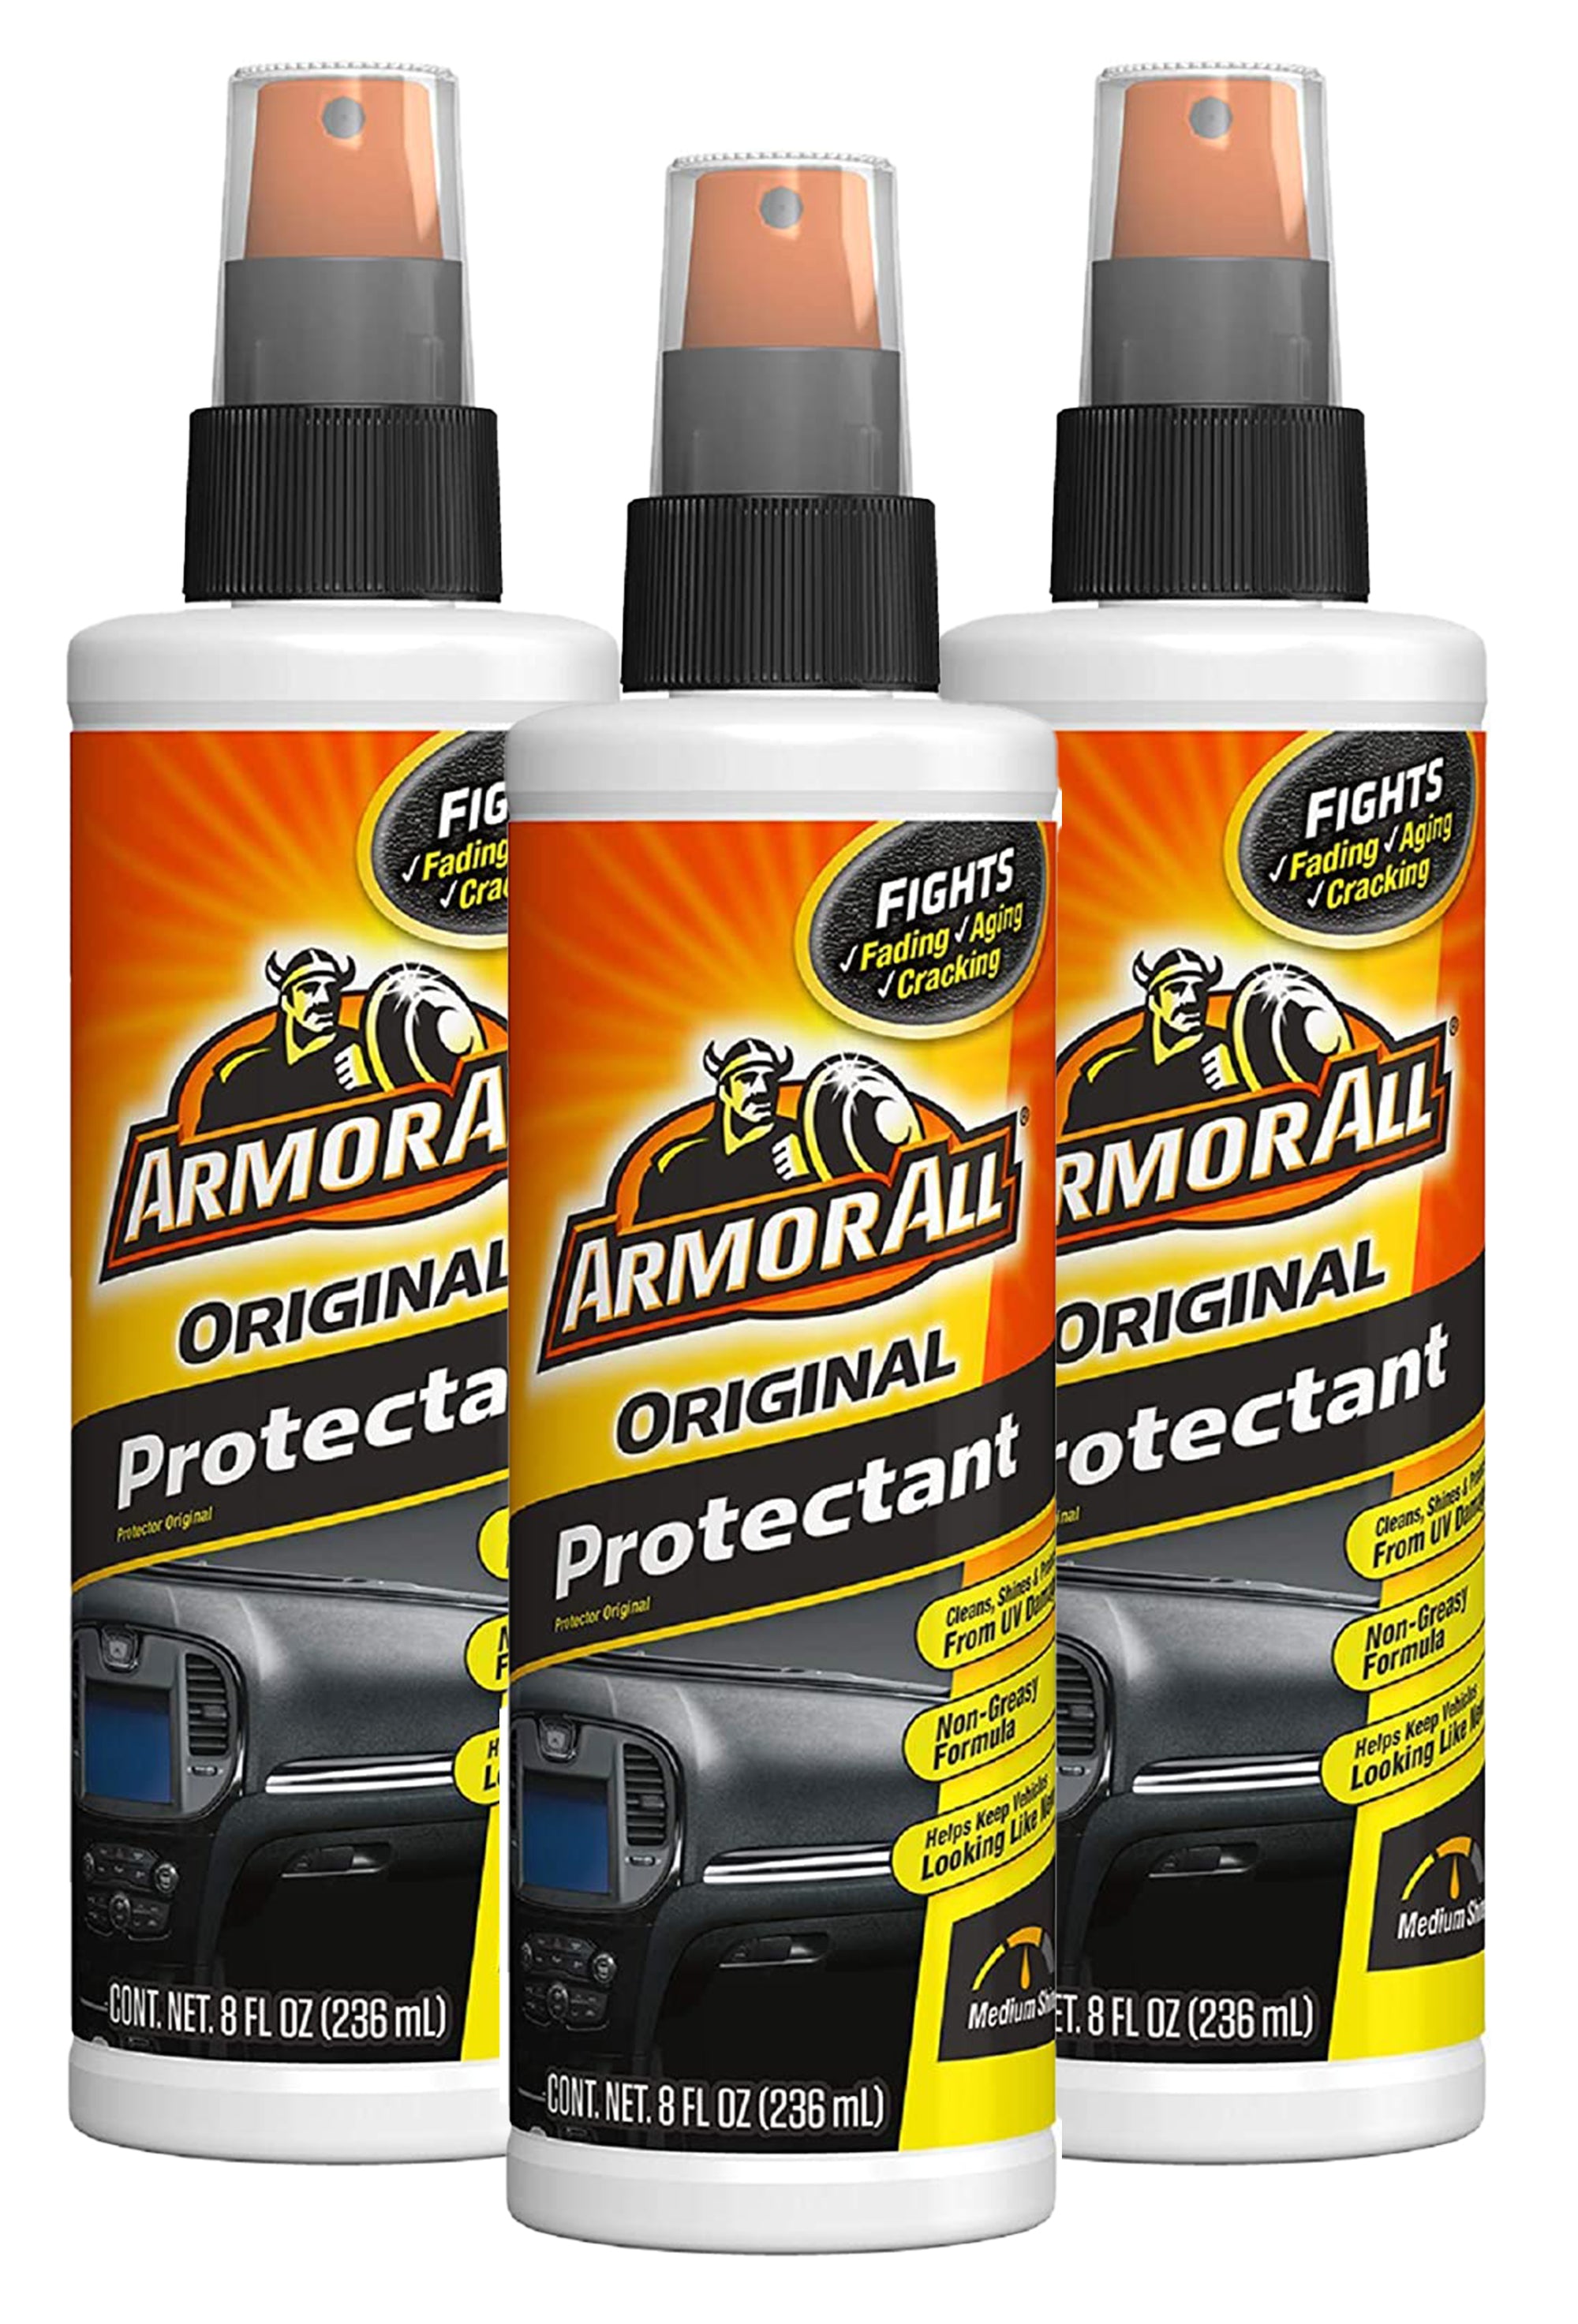 Armor All Protectant, Original - 4 fl oz